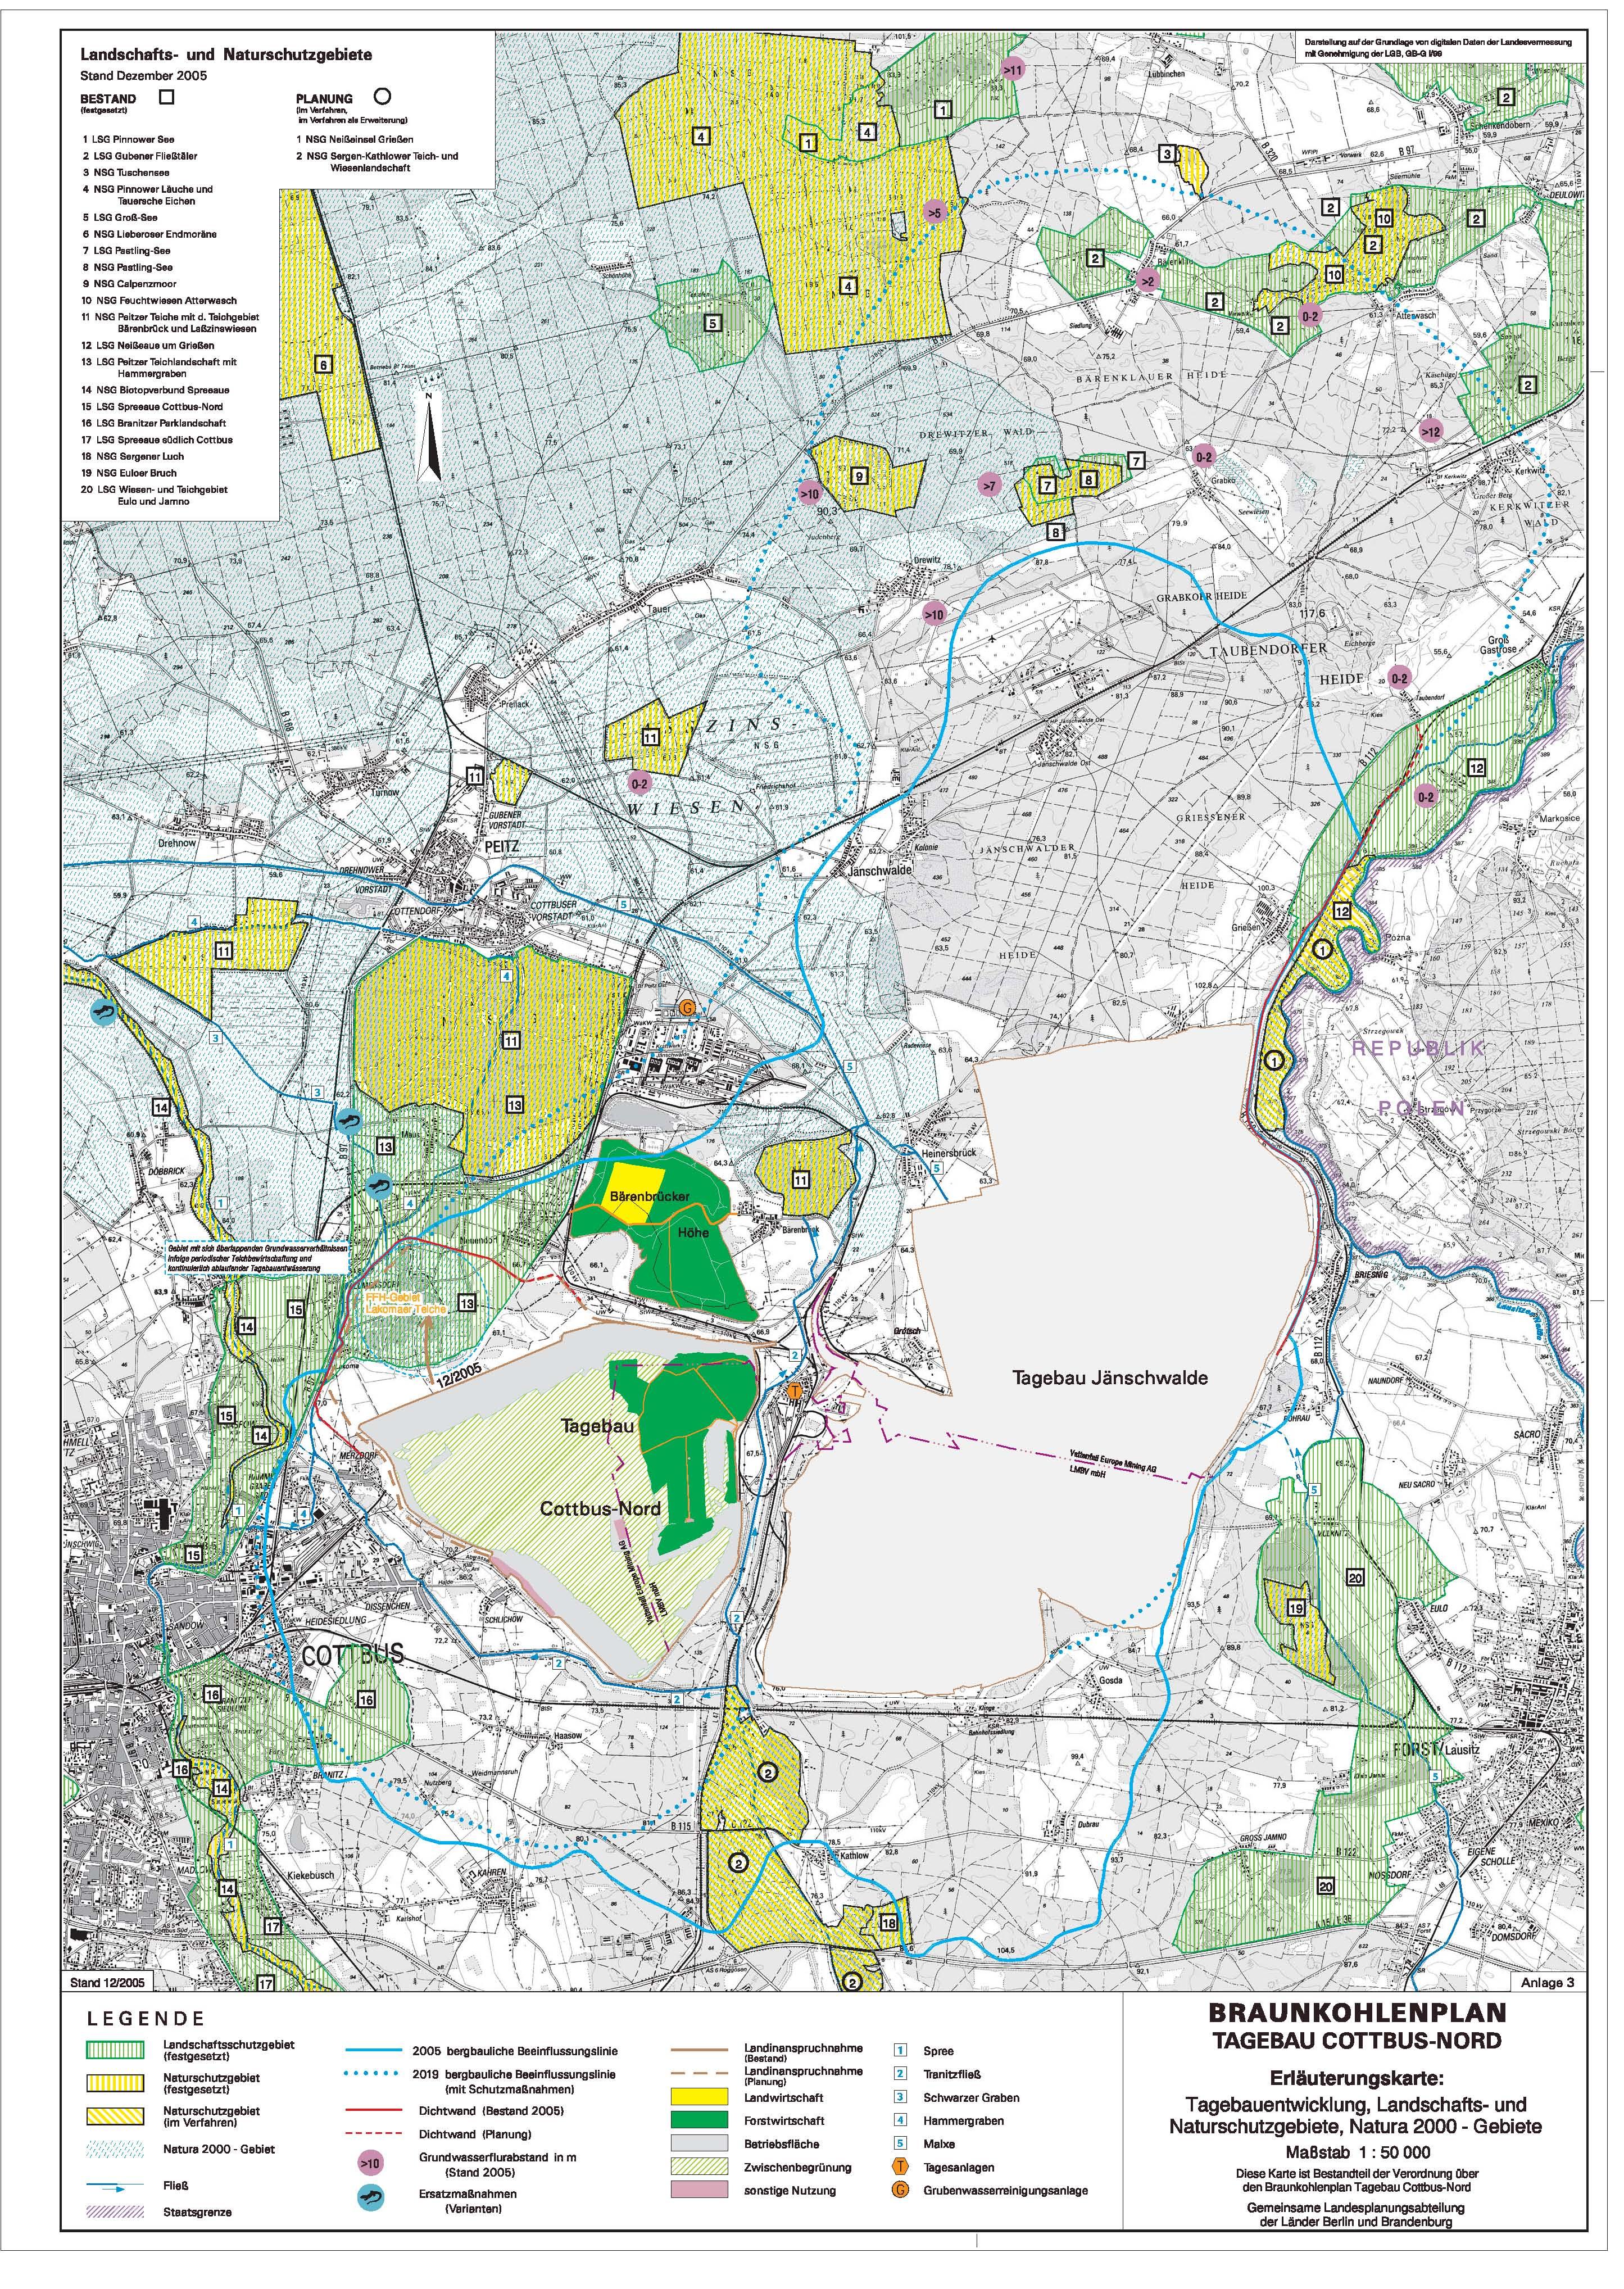 Braunkohlenplan - Tagebau Cottbus-Nord - Erläuterungskarte: Tagebauentwicklung, Landschafts- und Naturschutzgebiete, Natura 2000 - Gebiete